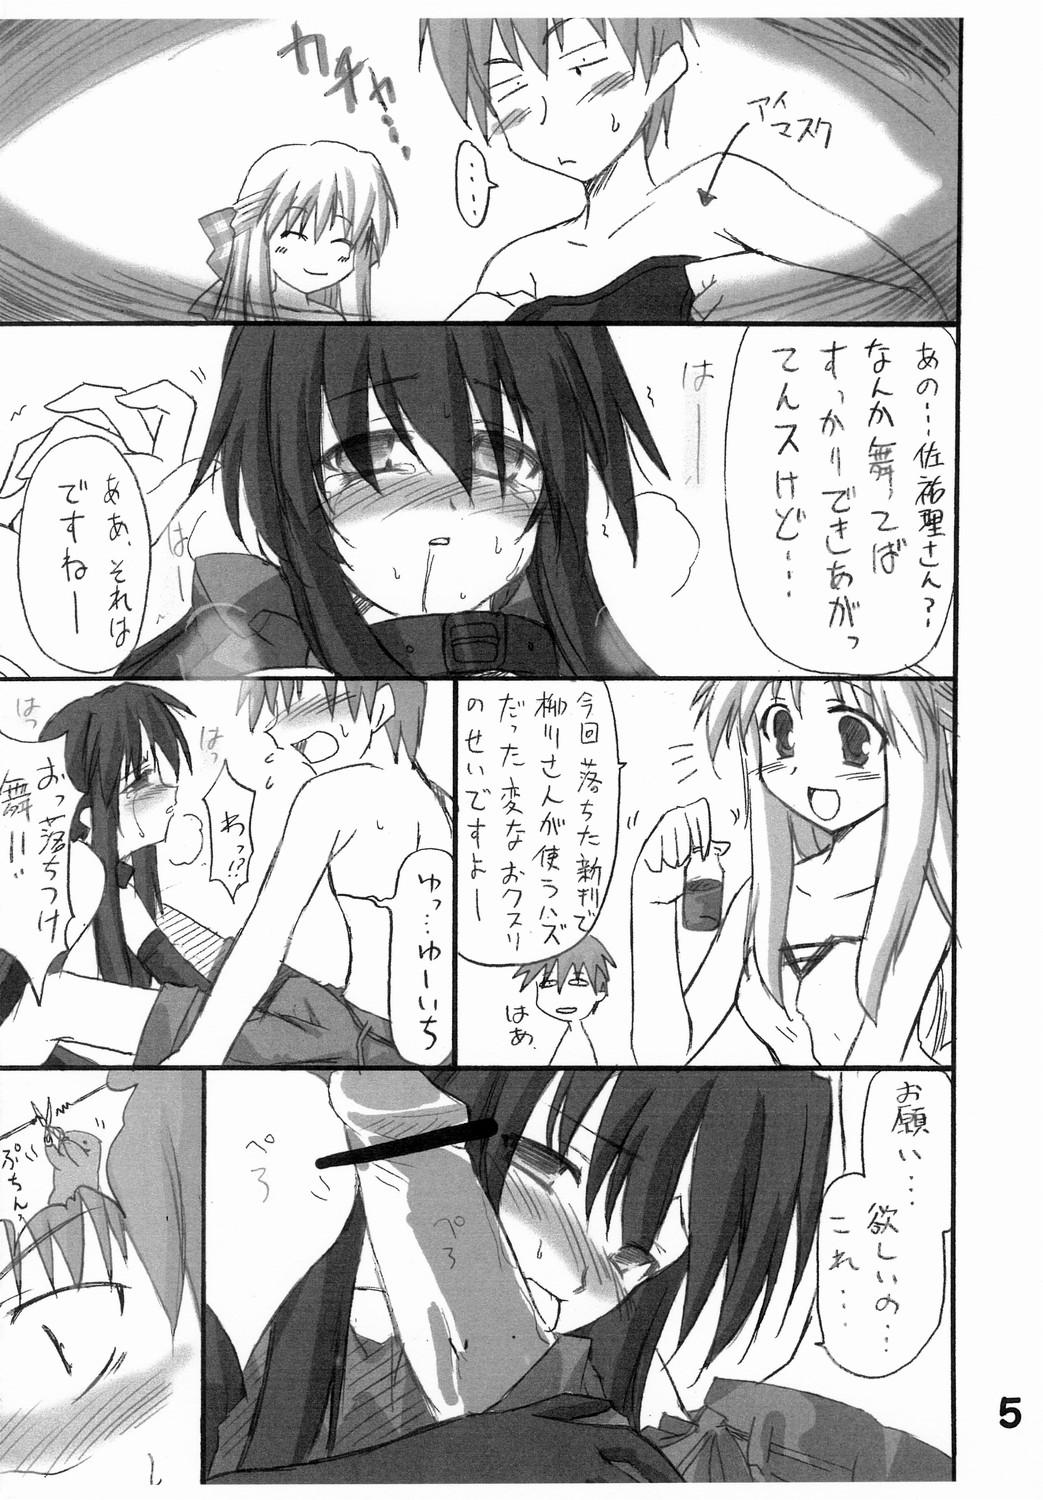 Asses Haru na no ni - Manatsu no Usagi - Kanon Collar - Page 6